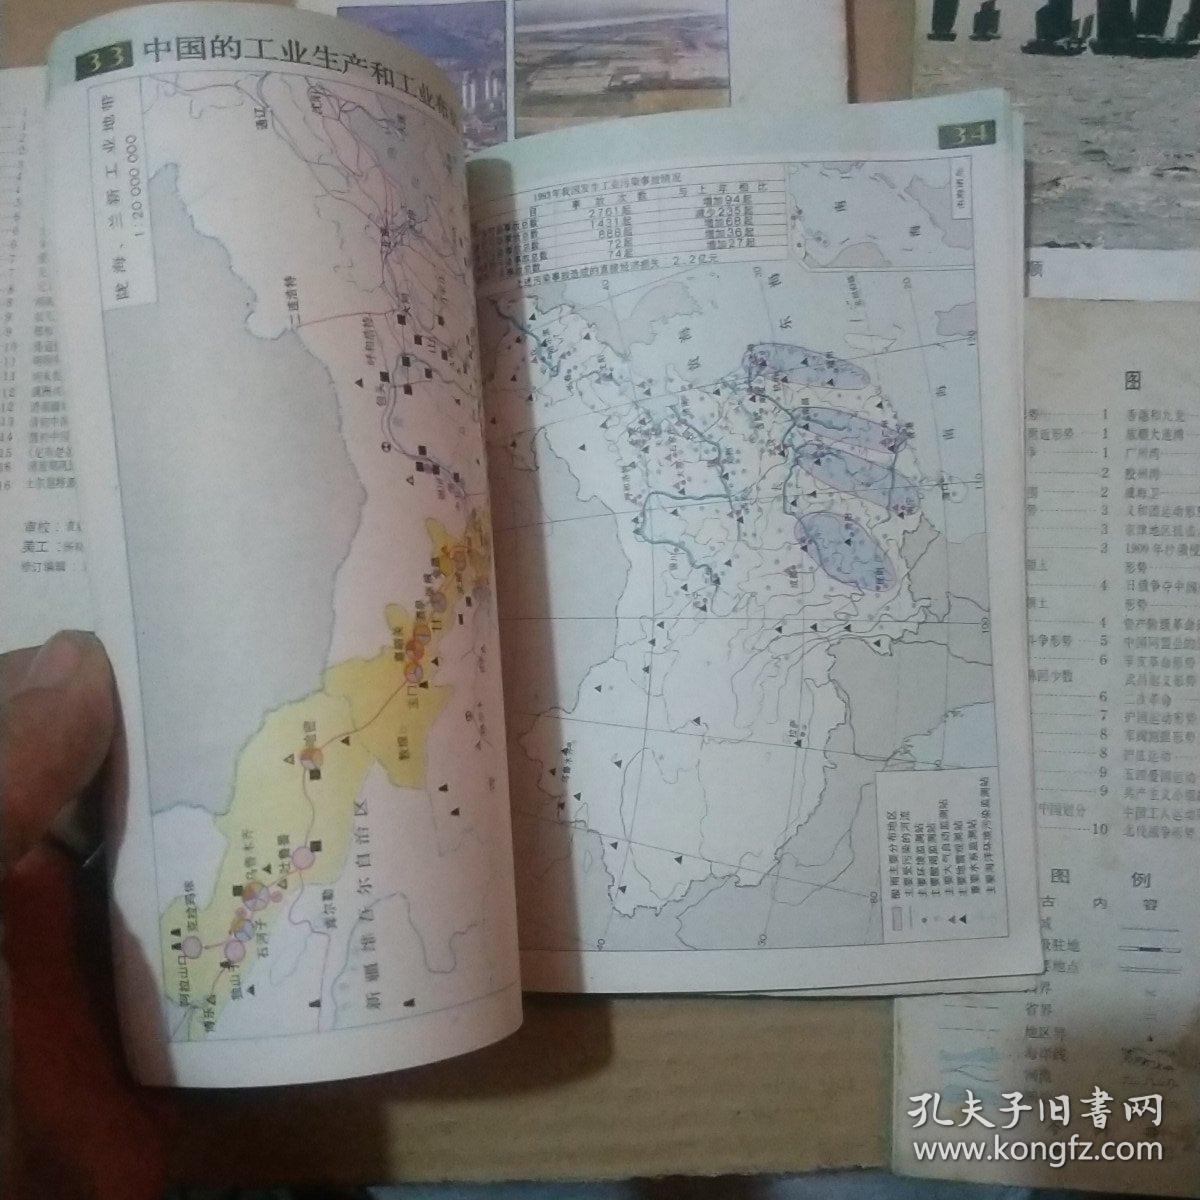 中国古代史地图册 中国近代现代史地图册 世界地图册 江苏地理 无锡县地理 中国地图册 高级中学地图册